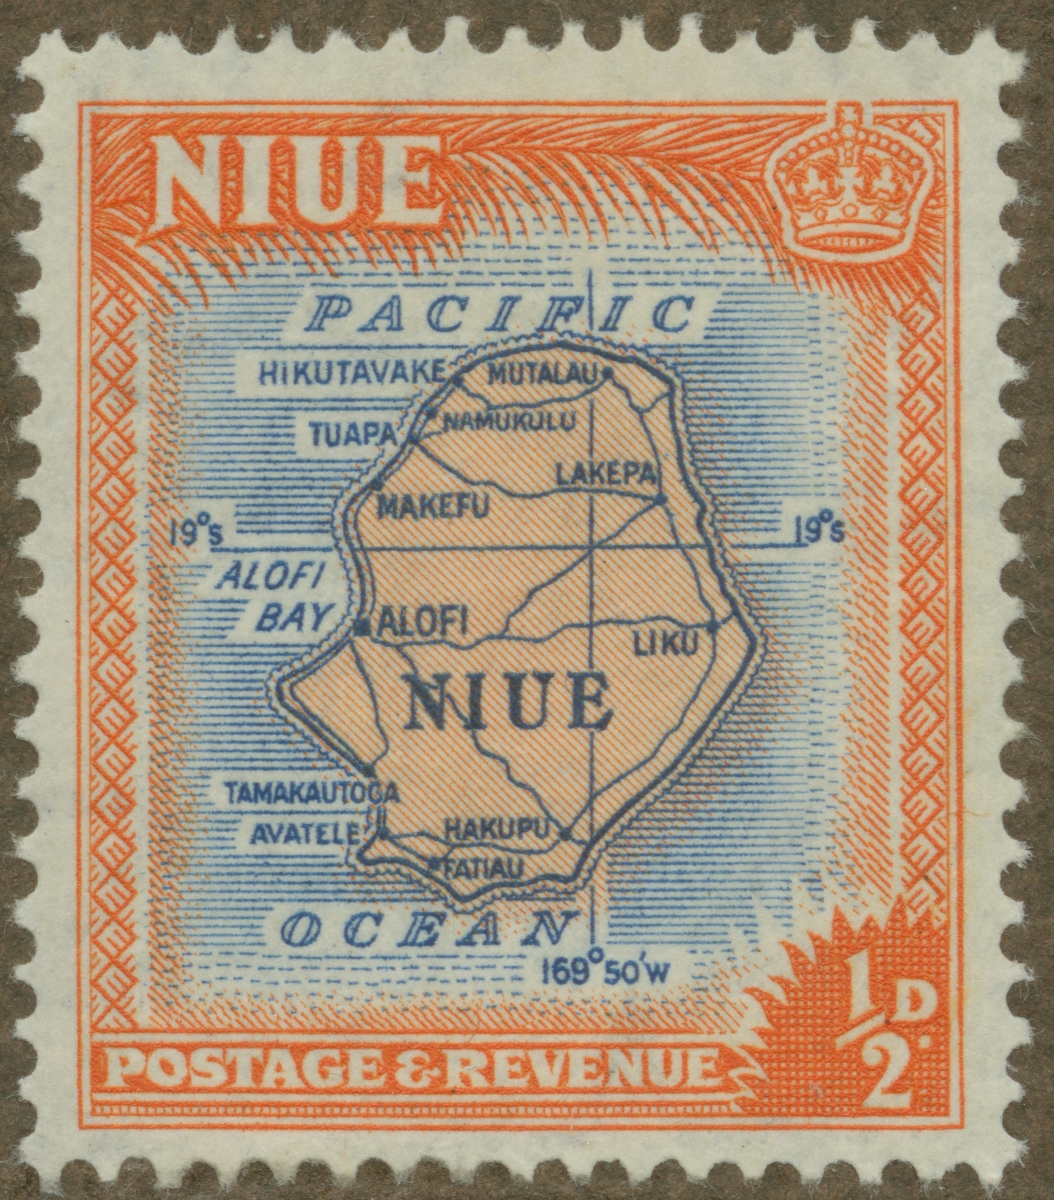 Frimärke ur Gösta Bodmans filatelistiska motivsamling, påbörjad 1950.
Frimärke från Niua, Nya Zeeland, 1950. Motiv av karta över Niueön i sydliga Stilla Havet.